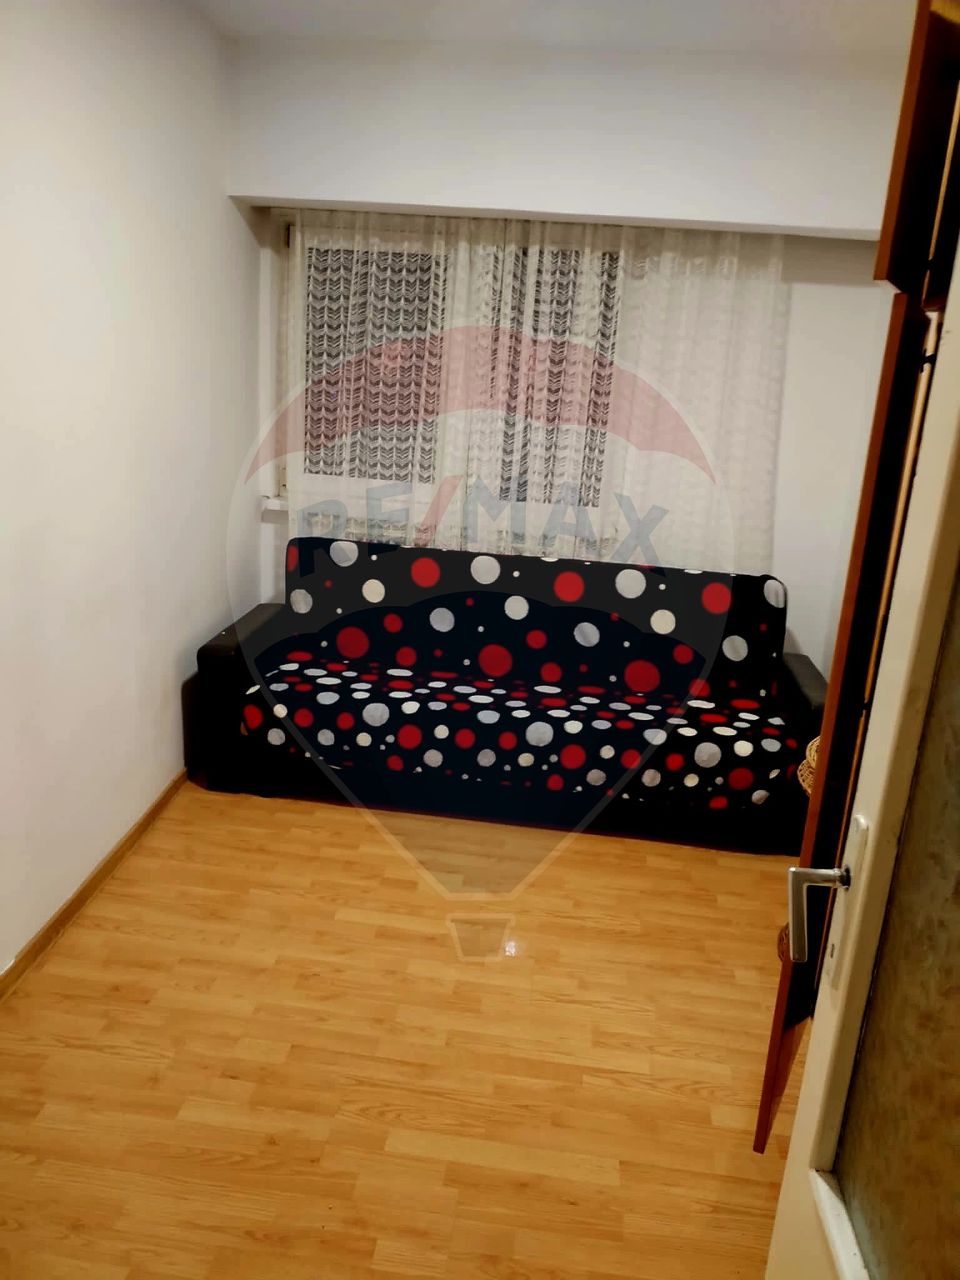 Apartament cu 3 camere de închiriat în zona Maratei